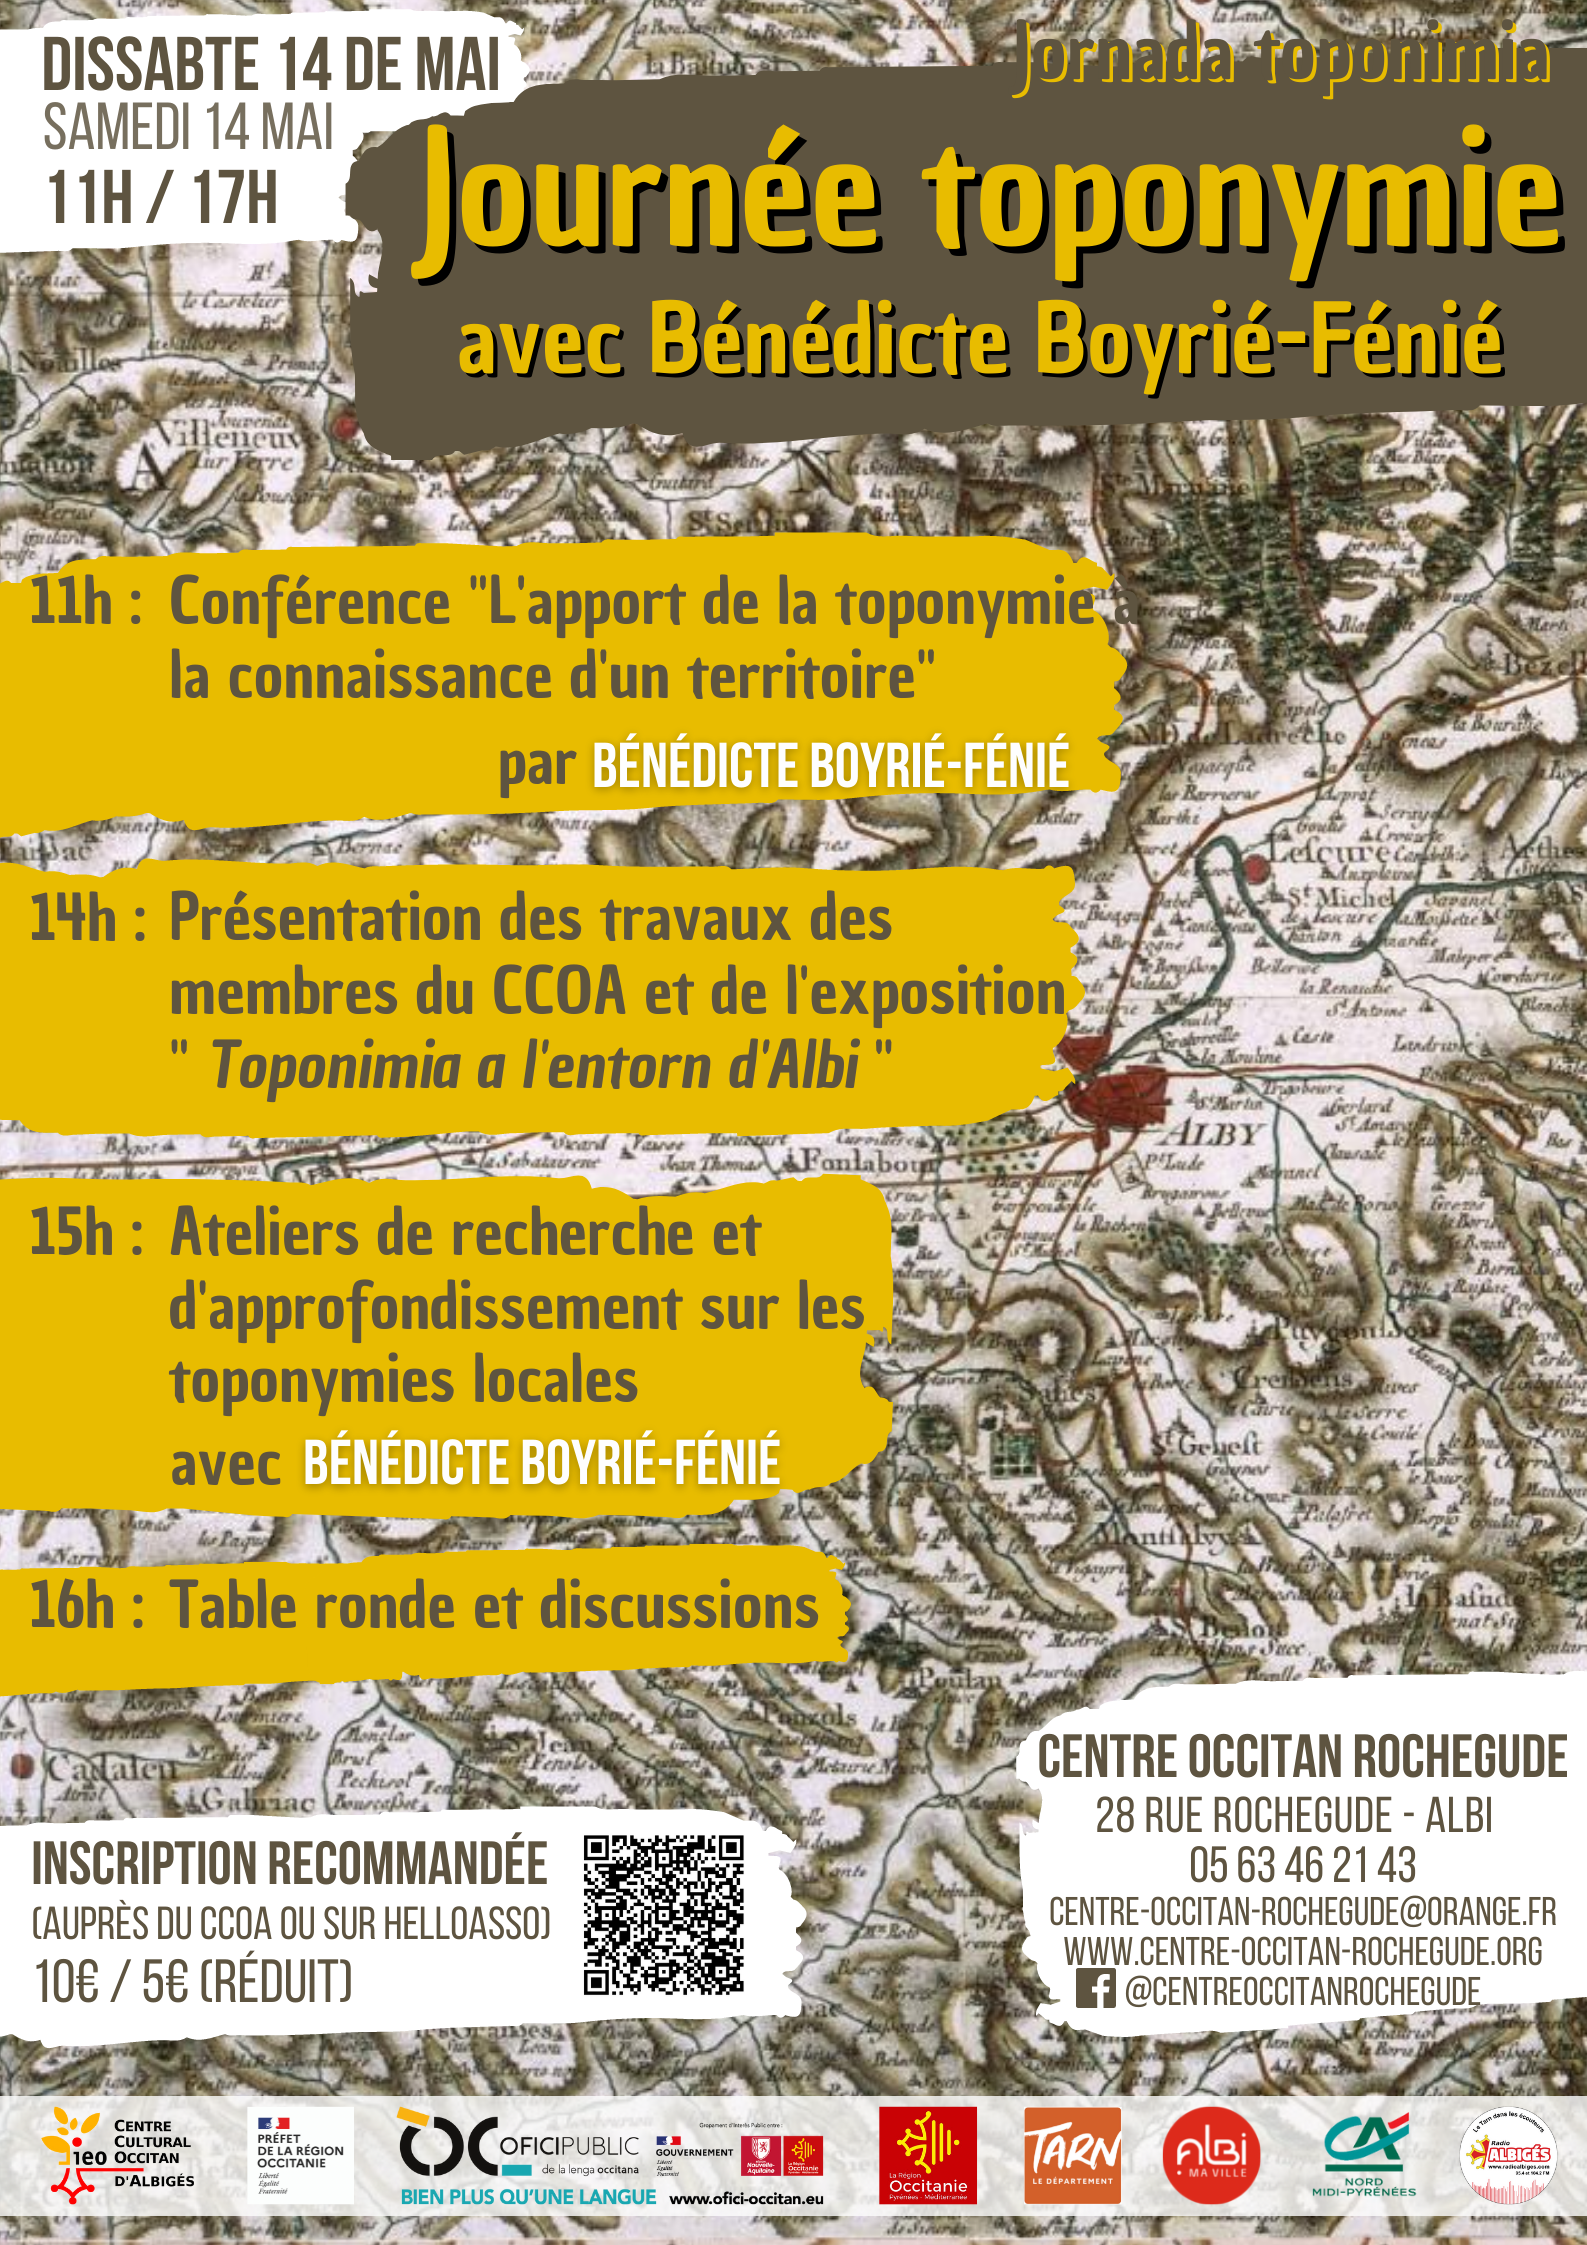 You are currently viewing Journée toponymie amb Bénédicte Boyrie-Fénié